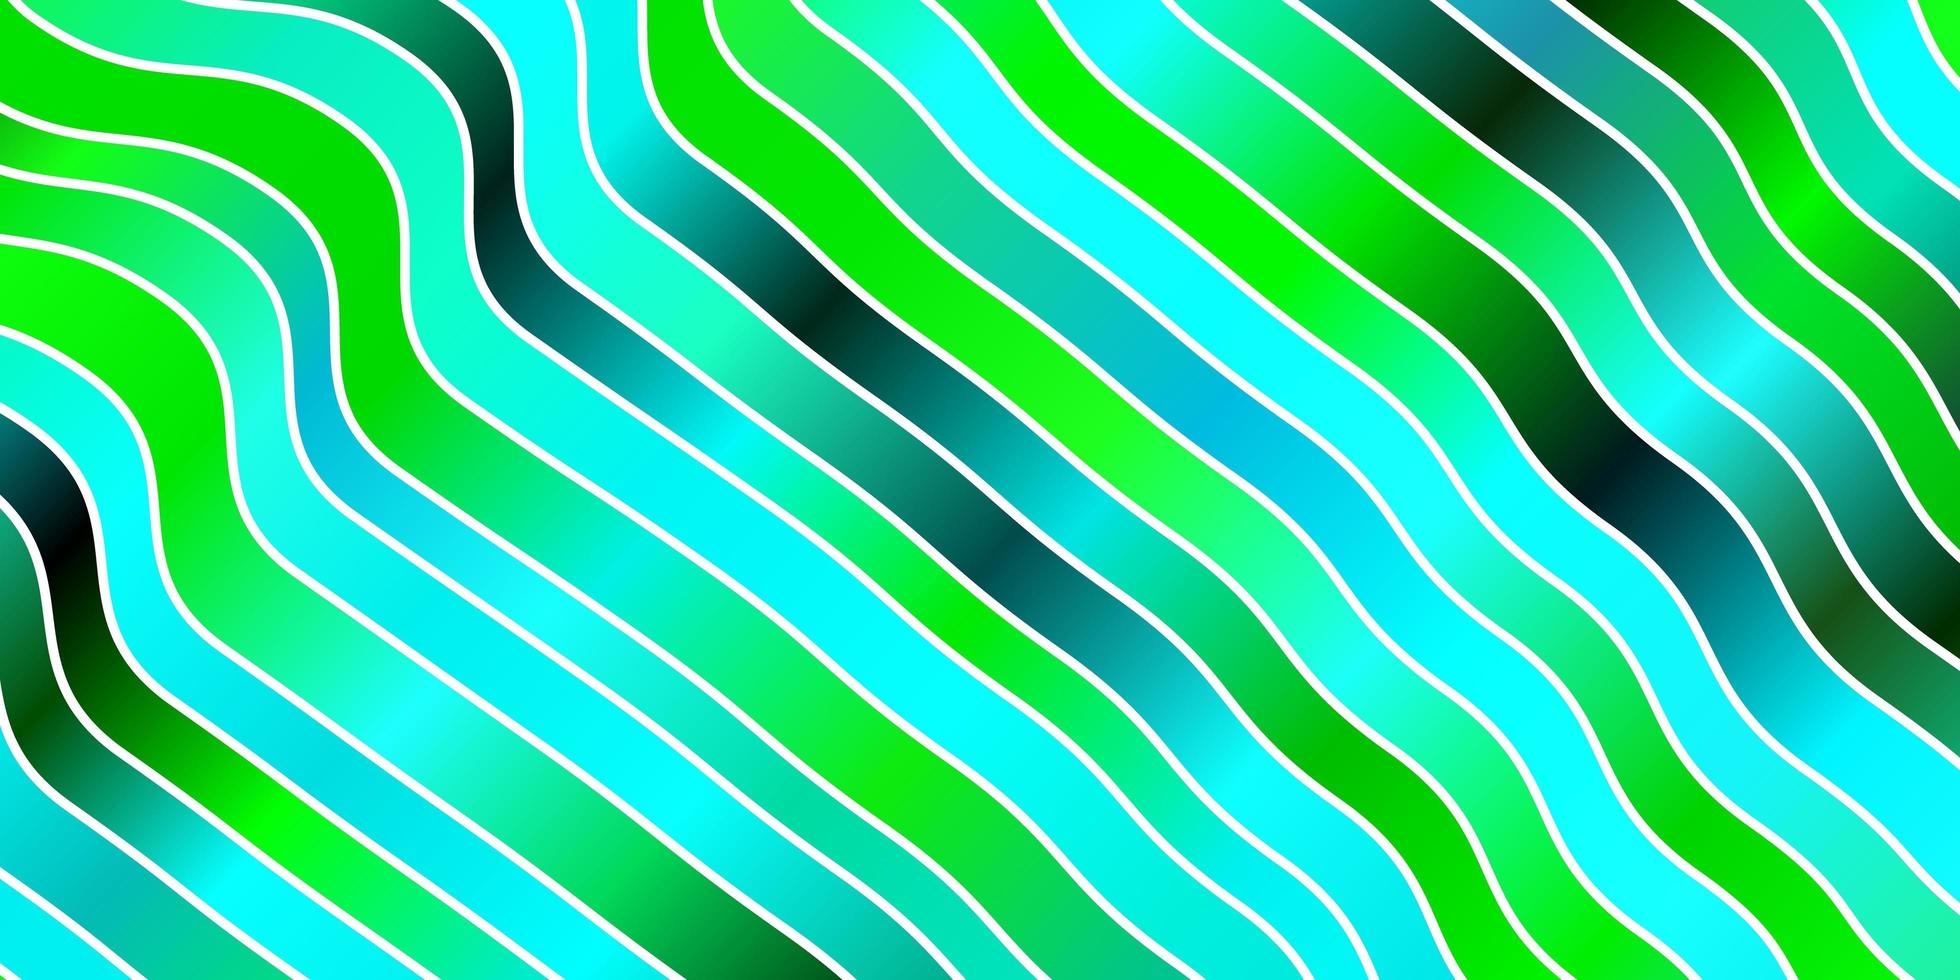 disposition de vecteur bleu clair, vert avec des courbes.